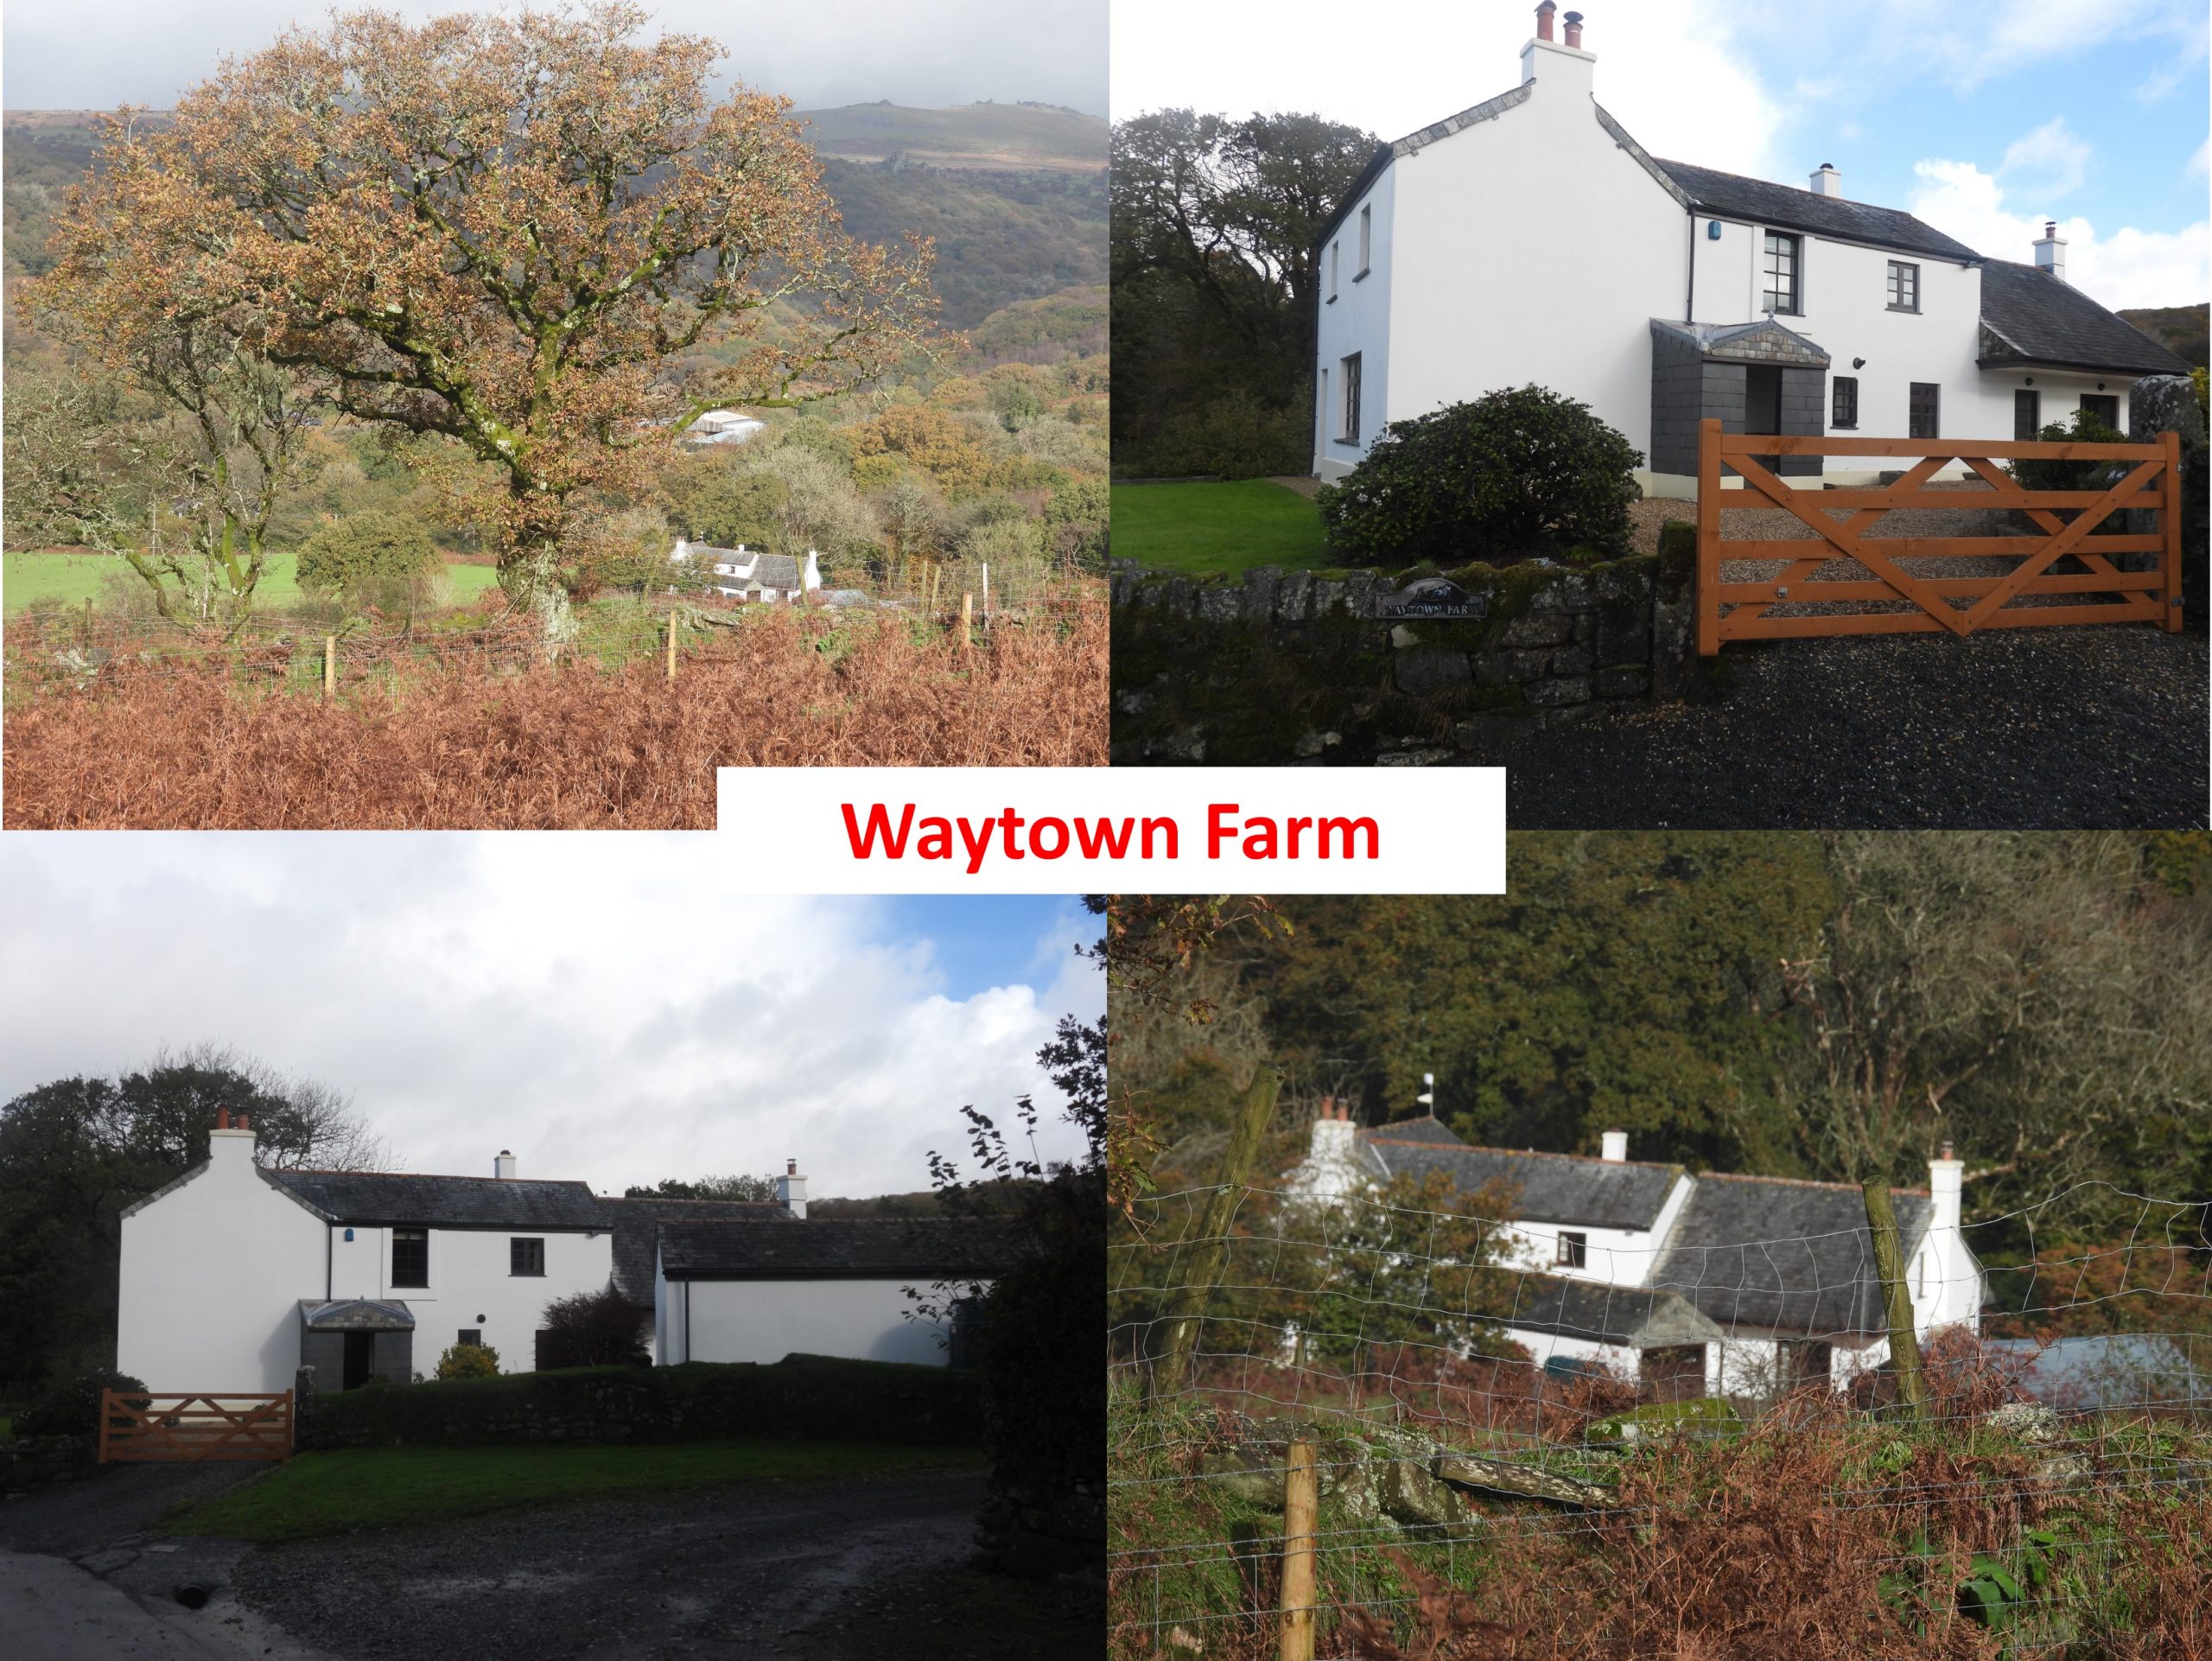 9. Waytown Farm